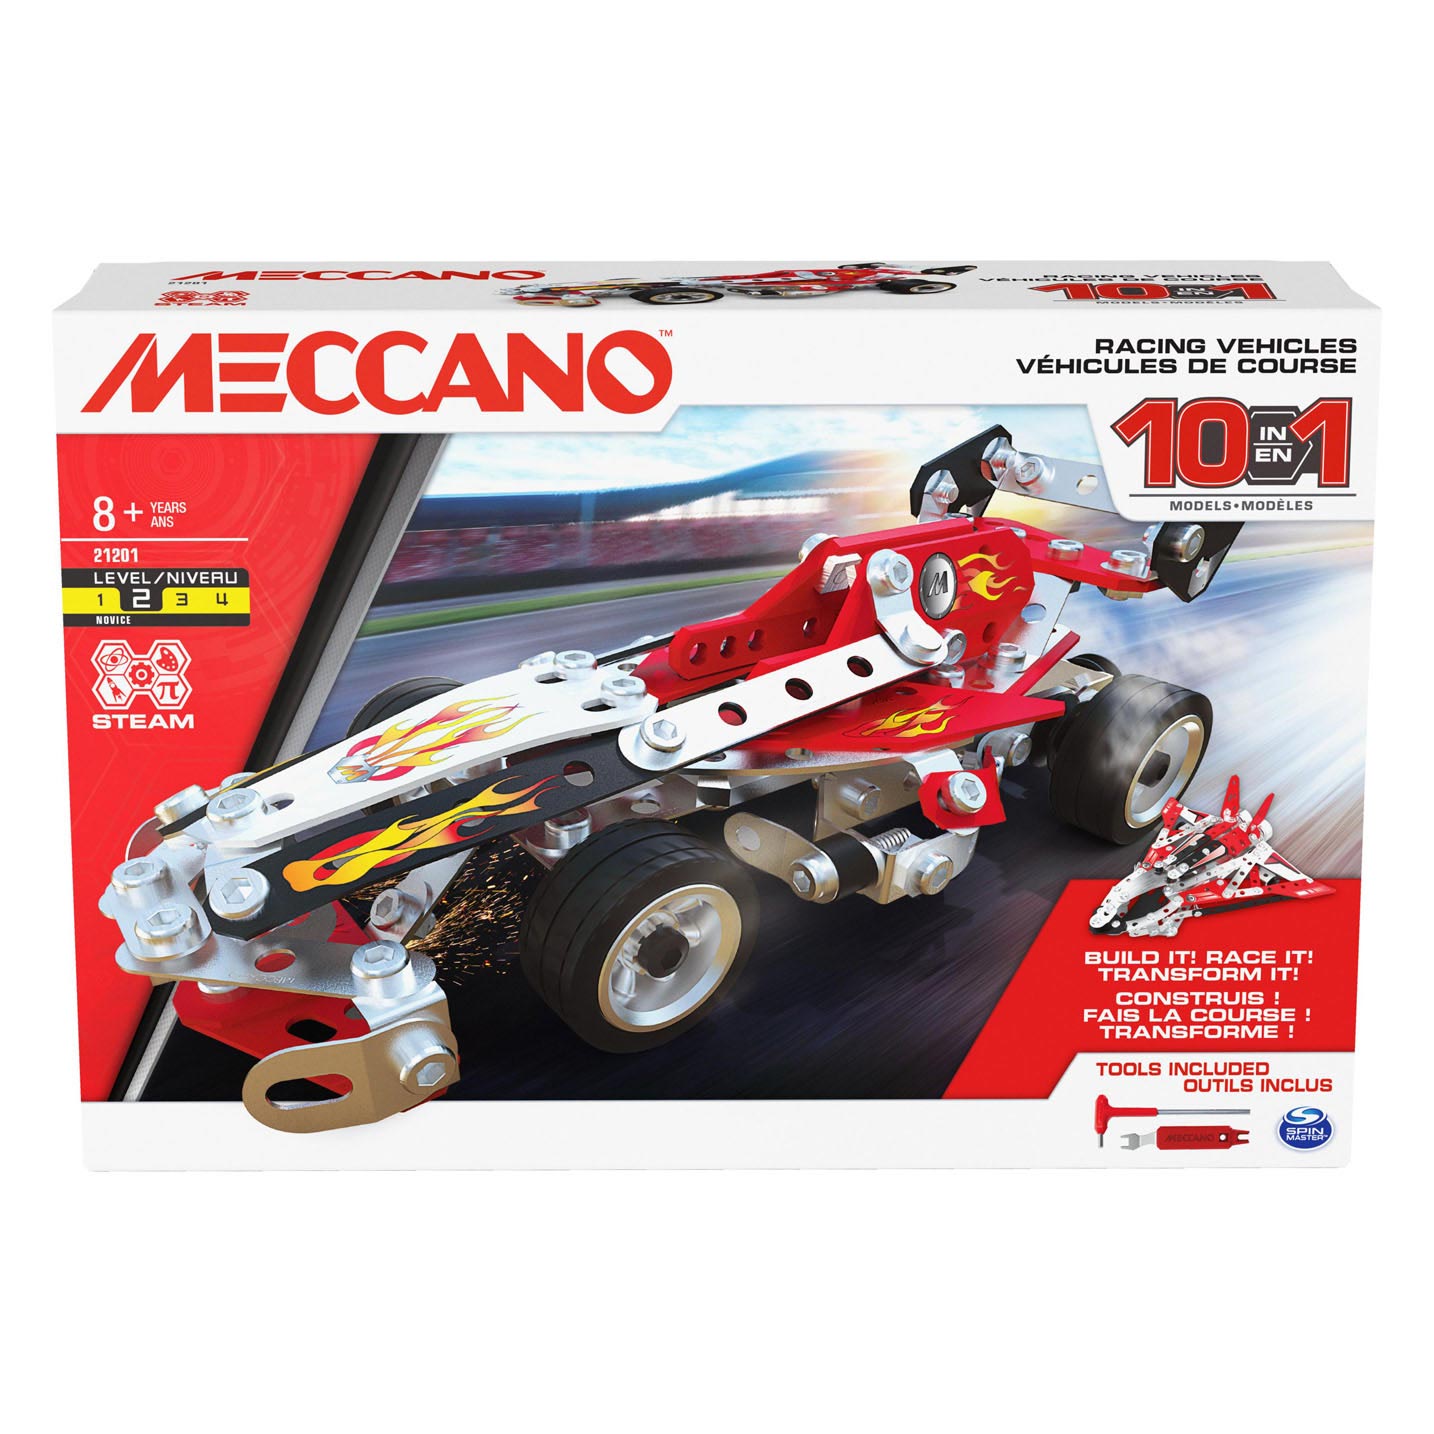 Meccano - Racevoertuigen, 10in1 S.T.E.M. Bouwpakket